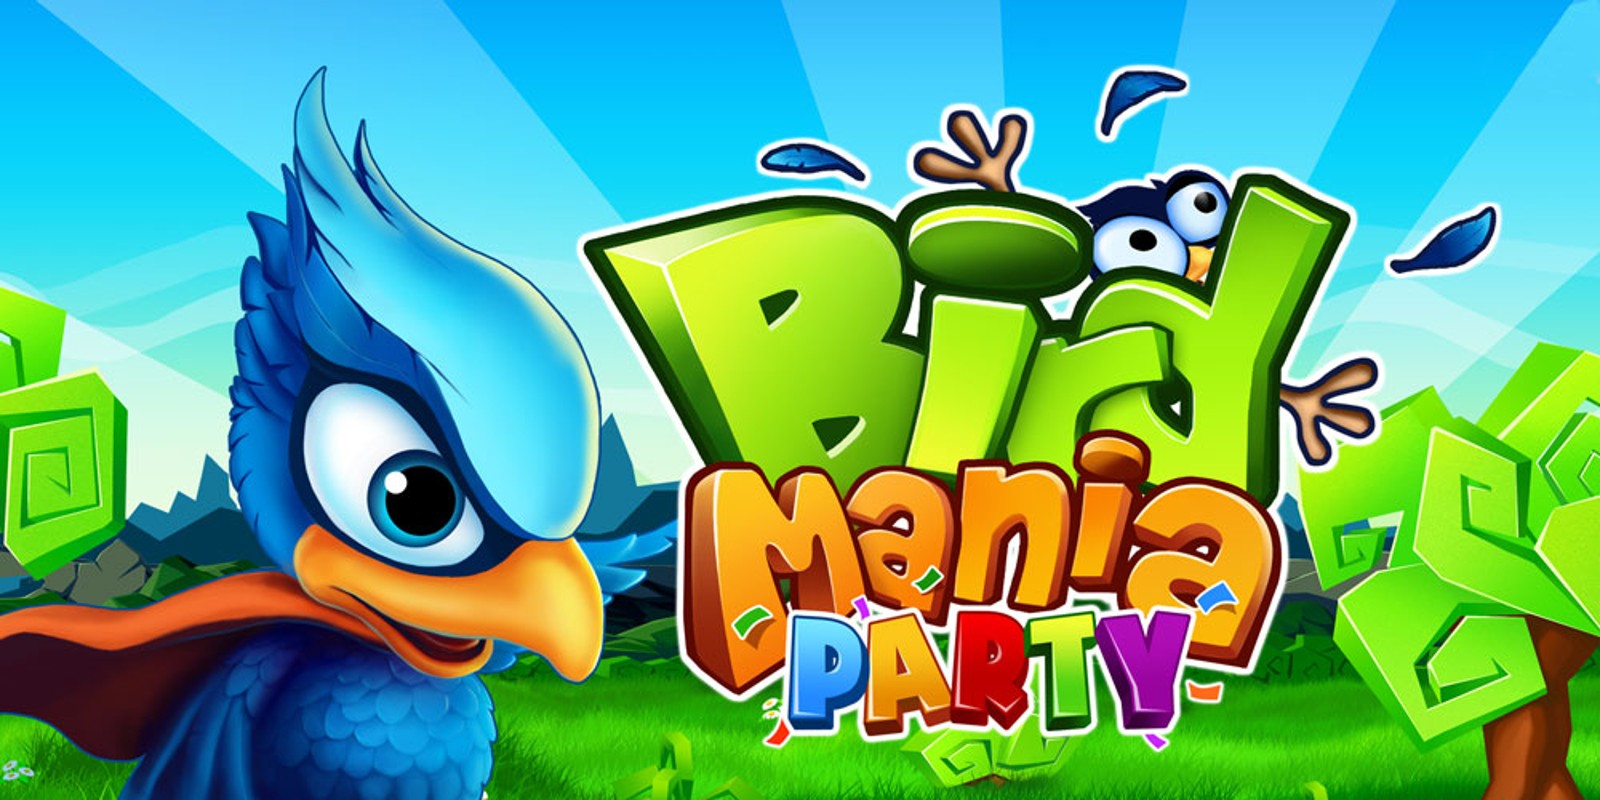 Bird Mania Party